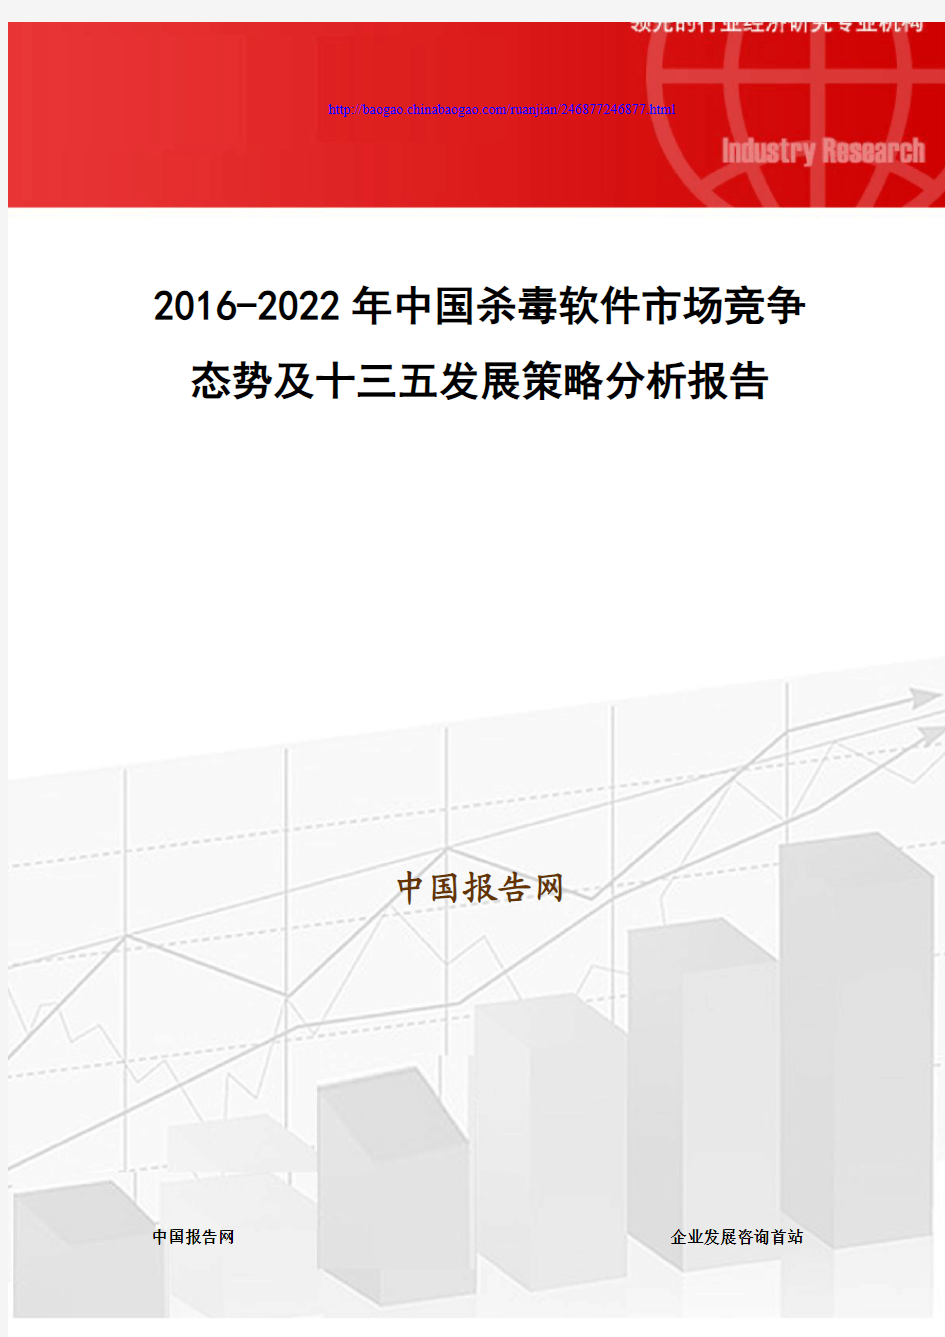 2016-2022年中国杀毒软件市场竞争态势及十三五发展策略分析报告